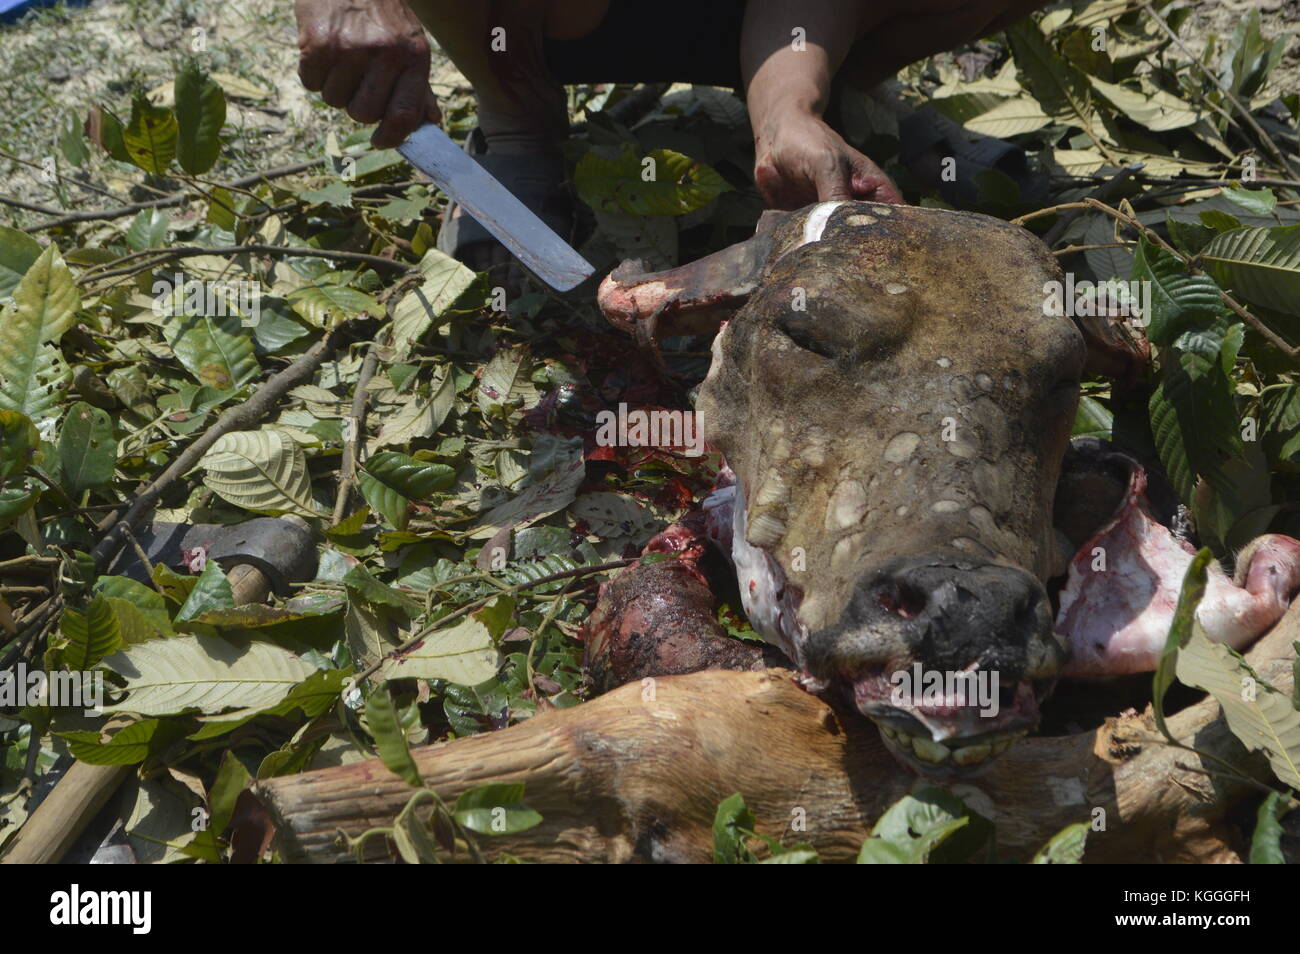 Schlachtung von Wasserbüffeln in einem kleinen nepalesischen Dorf auf humane Weise. Getötet mit 3 Schlägen der unscharfen Seite einer Axt auf dem Kopf. Alle Männer helfen. Stockfoto